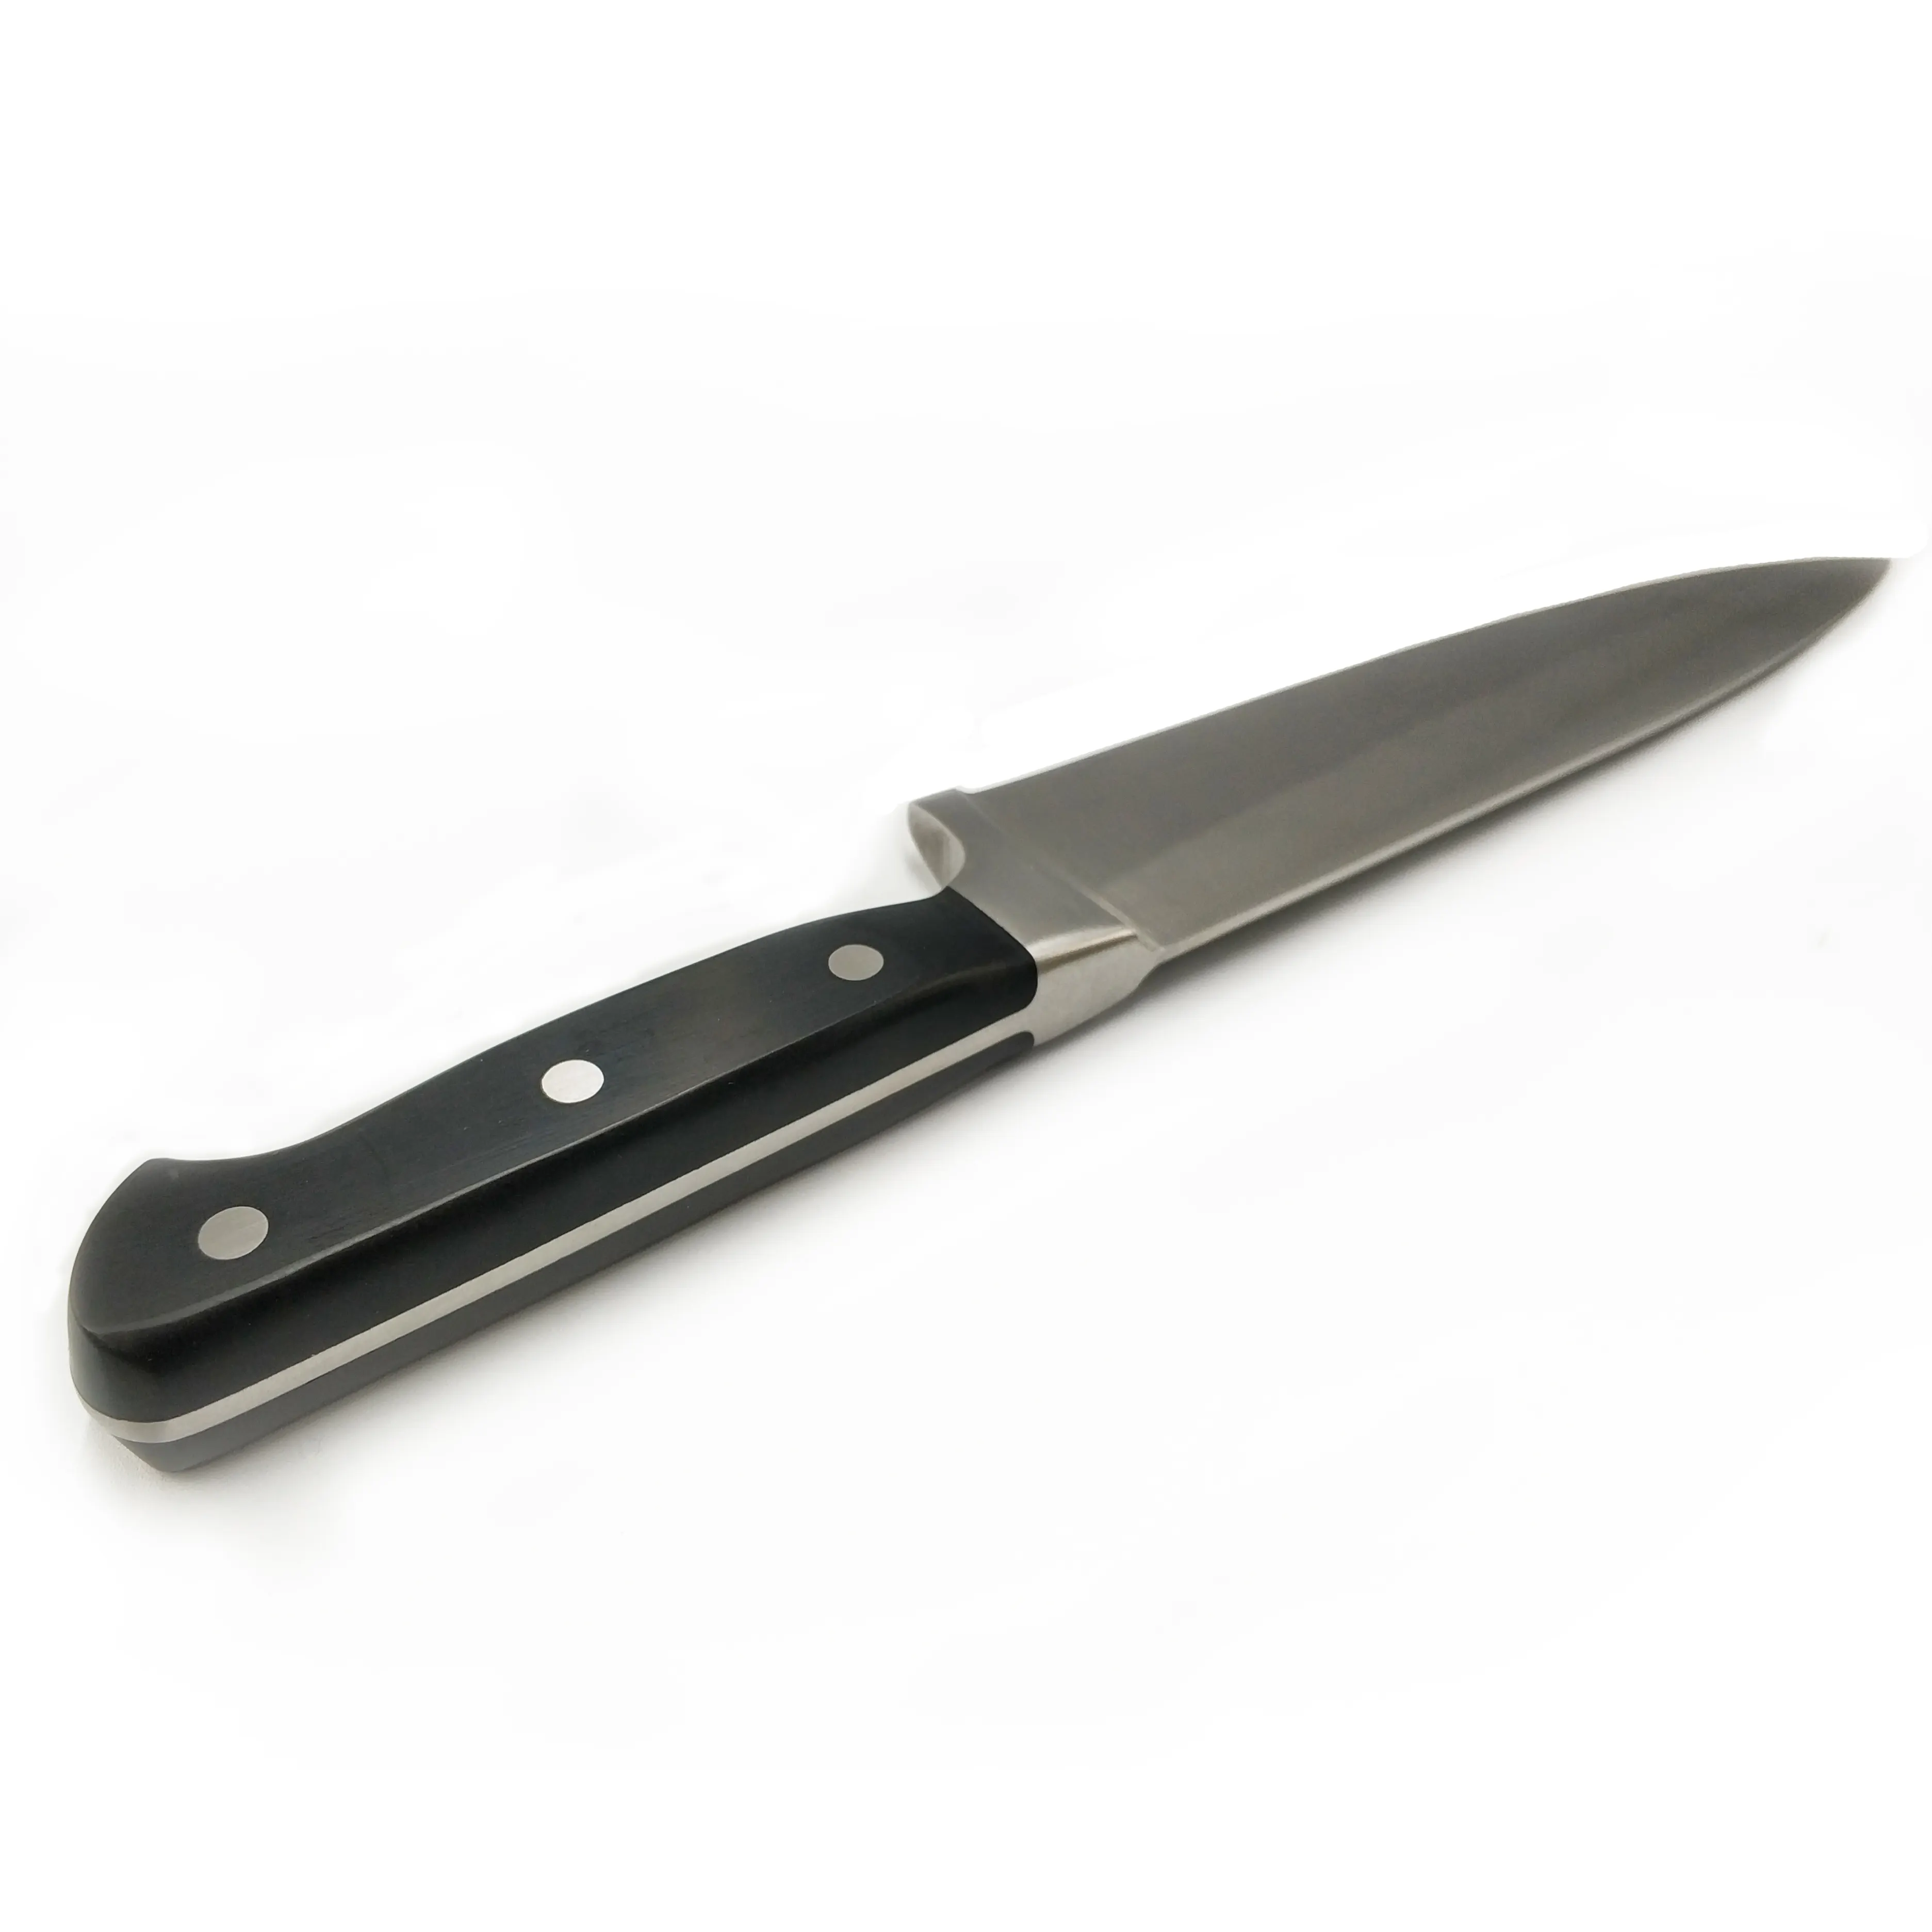 Xyj couteau de chef cuisine en acier inoxydable, ustensiles de chef de cuisine en acier inoxydable robuste manche en plastique ABS couteaux à couverts de 8 pouces, rasoir tranchant lame robuste